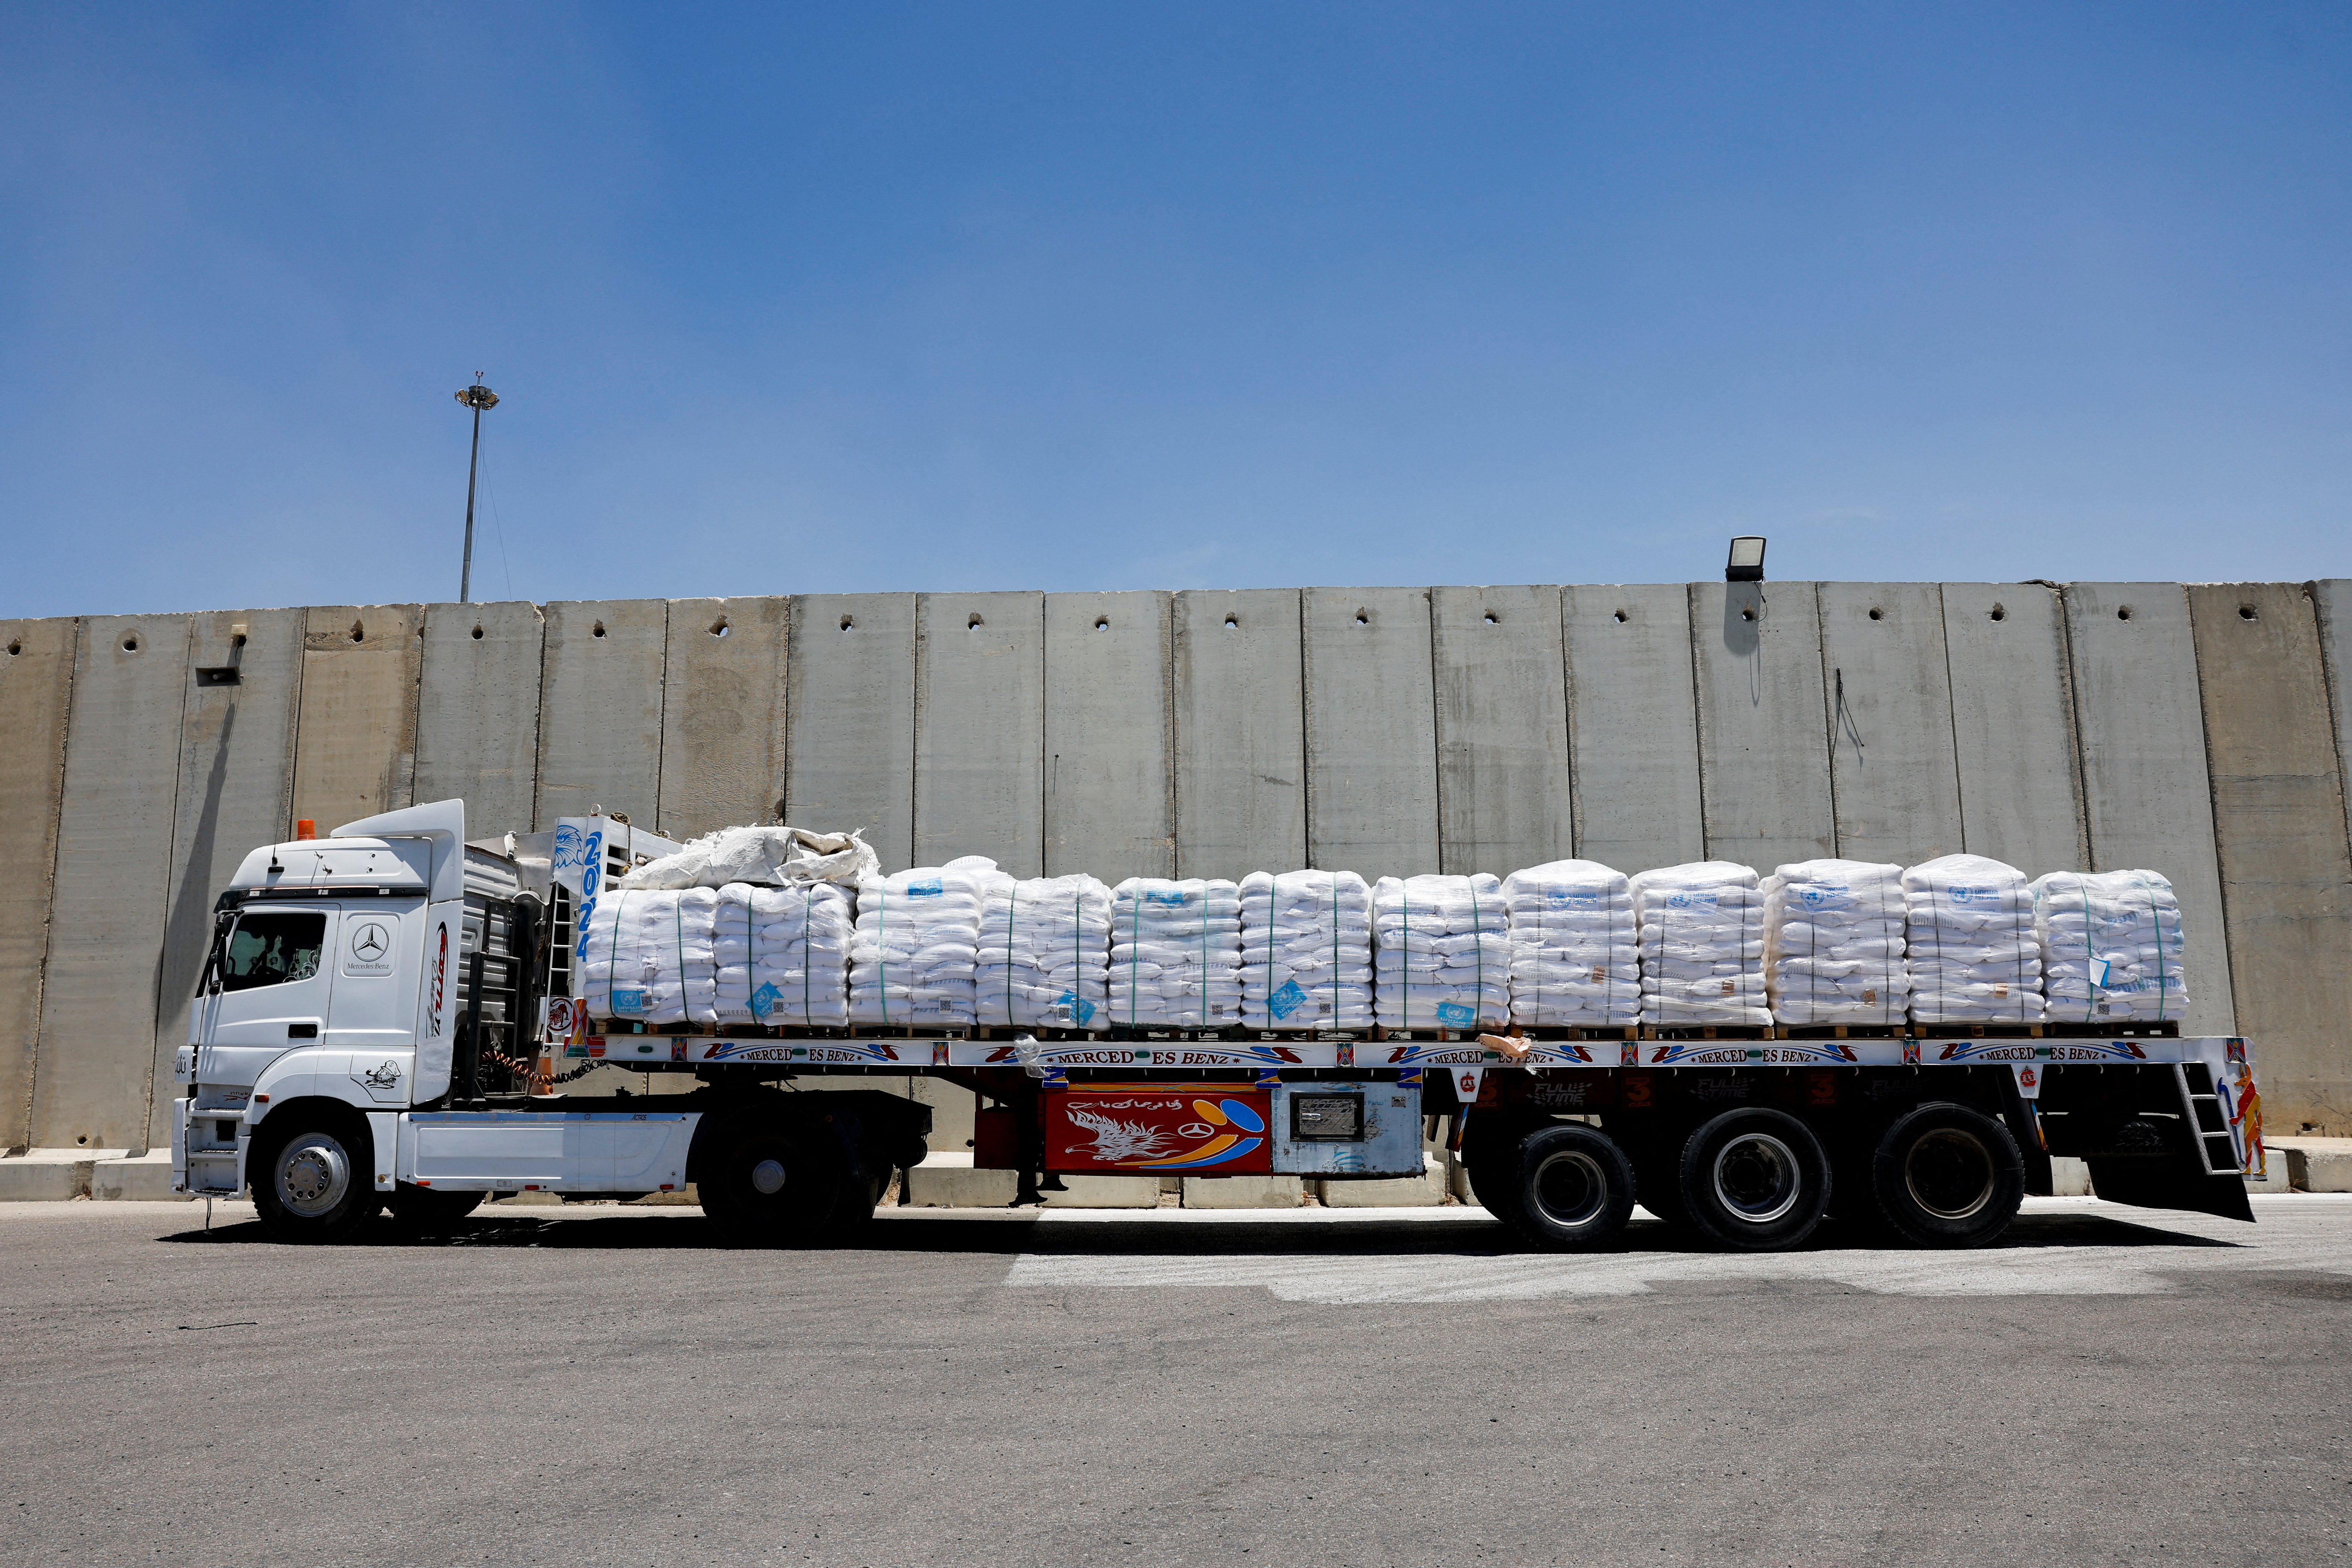 イスラエル、ガザ南部で軍事活動を一時停止 支援物資搬入拡大へ - ロイター (Reuters Japan)